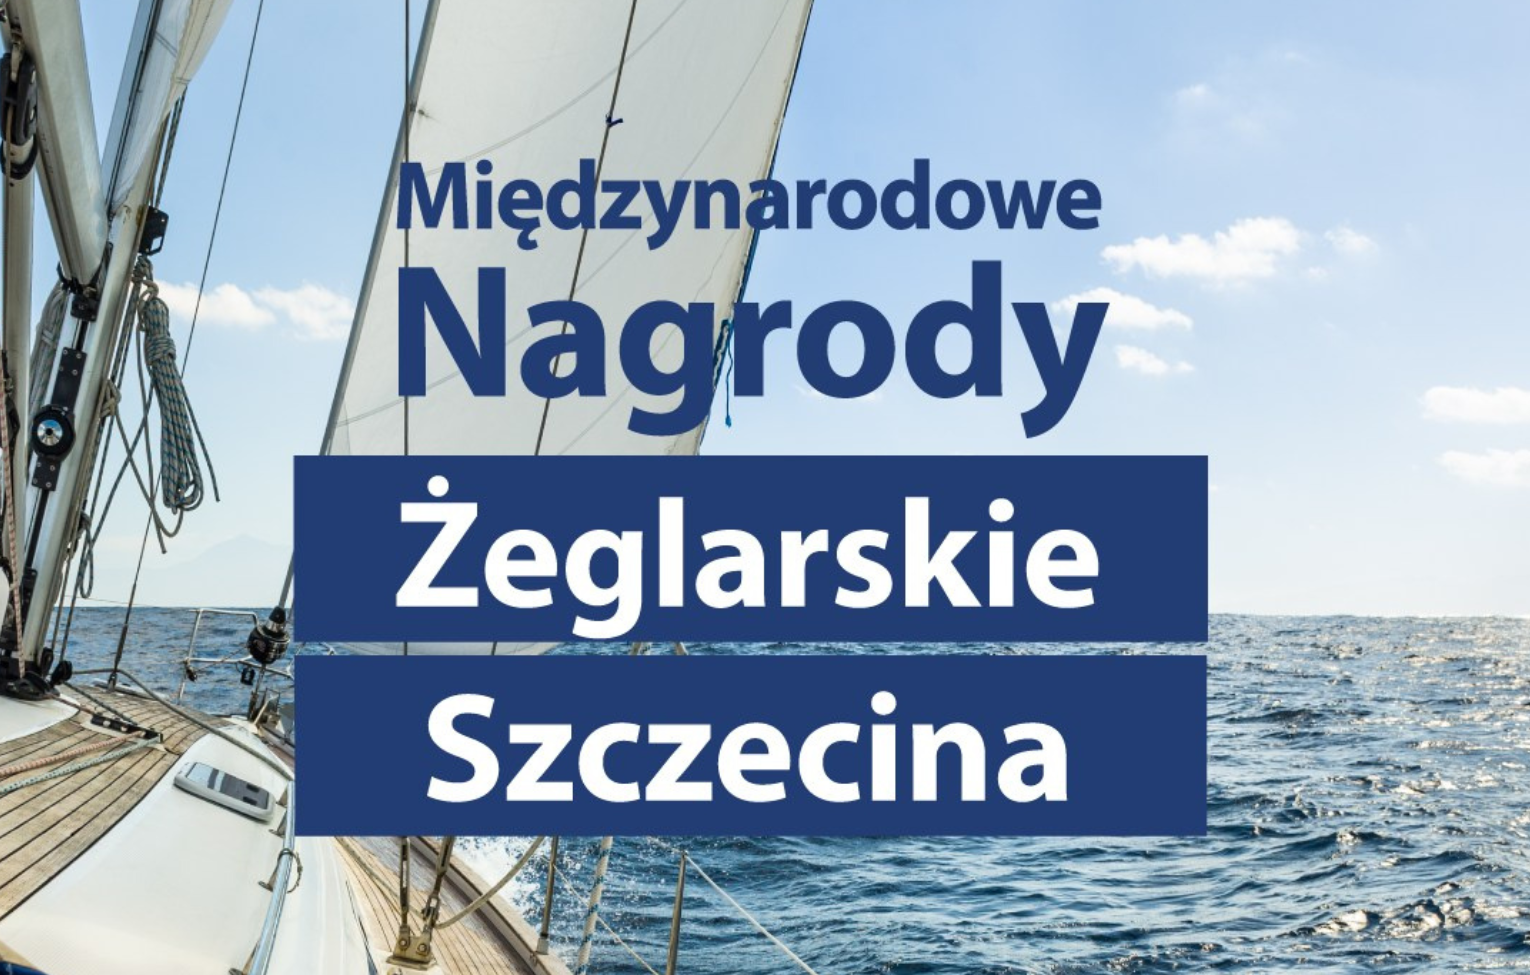 Międzynarodowe Nagrody Żeglarskie Szczecina